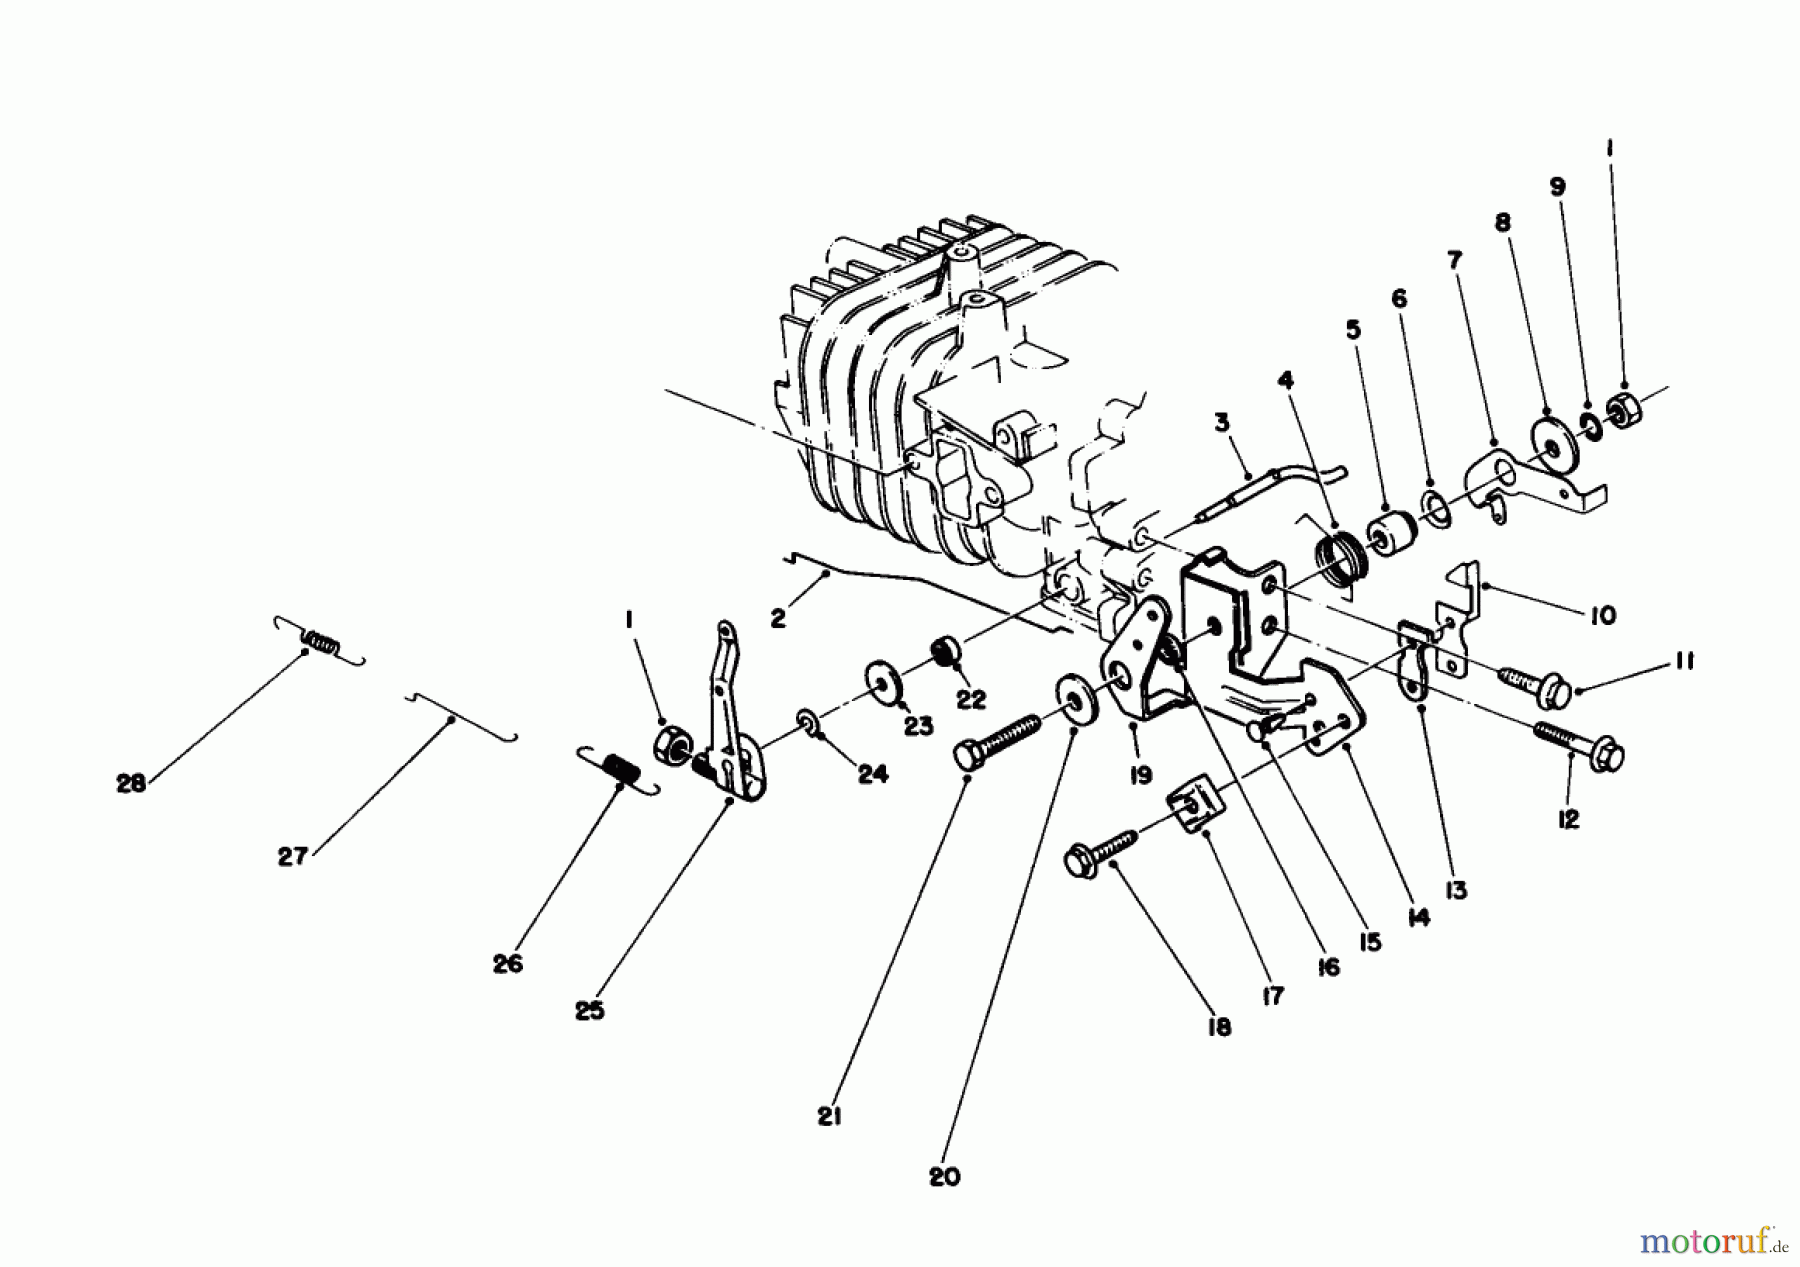  Toro Neu Mowers, Walk-Behind Seite 1 20745C - Toro Lawnmower, 1988 (8000001-8999999) GOVERNOR ASSEMBLY (ENGINE NO. 47PG6)